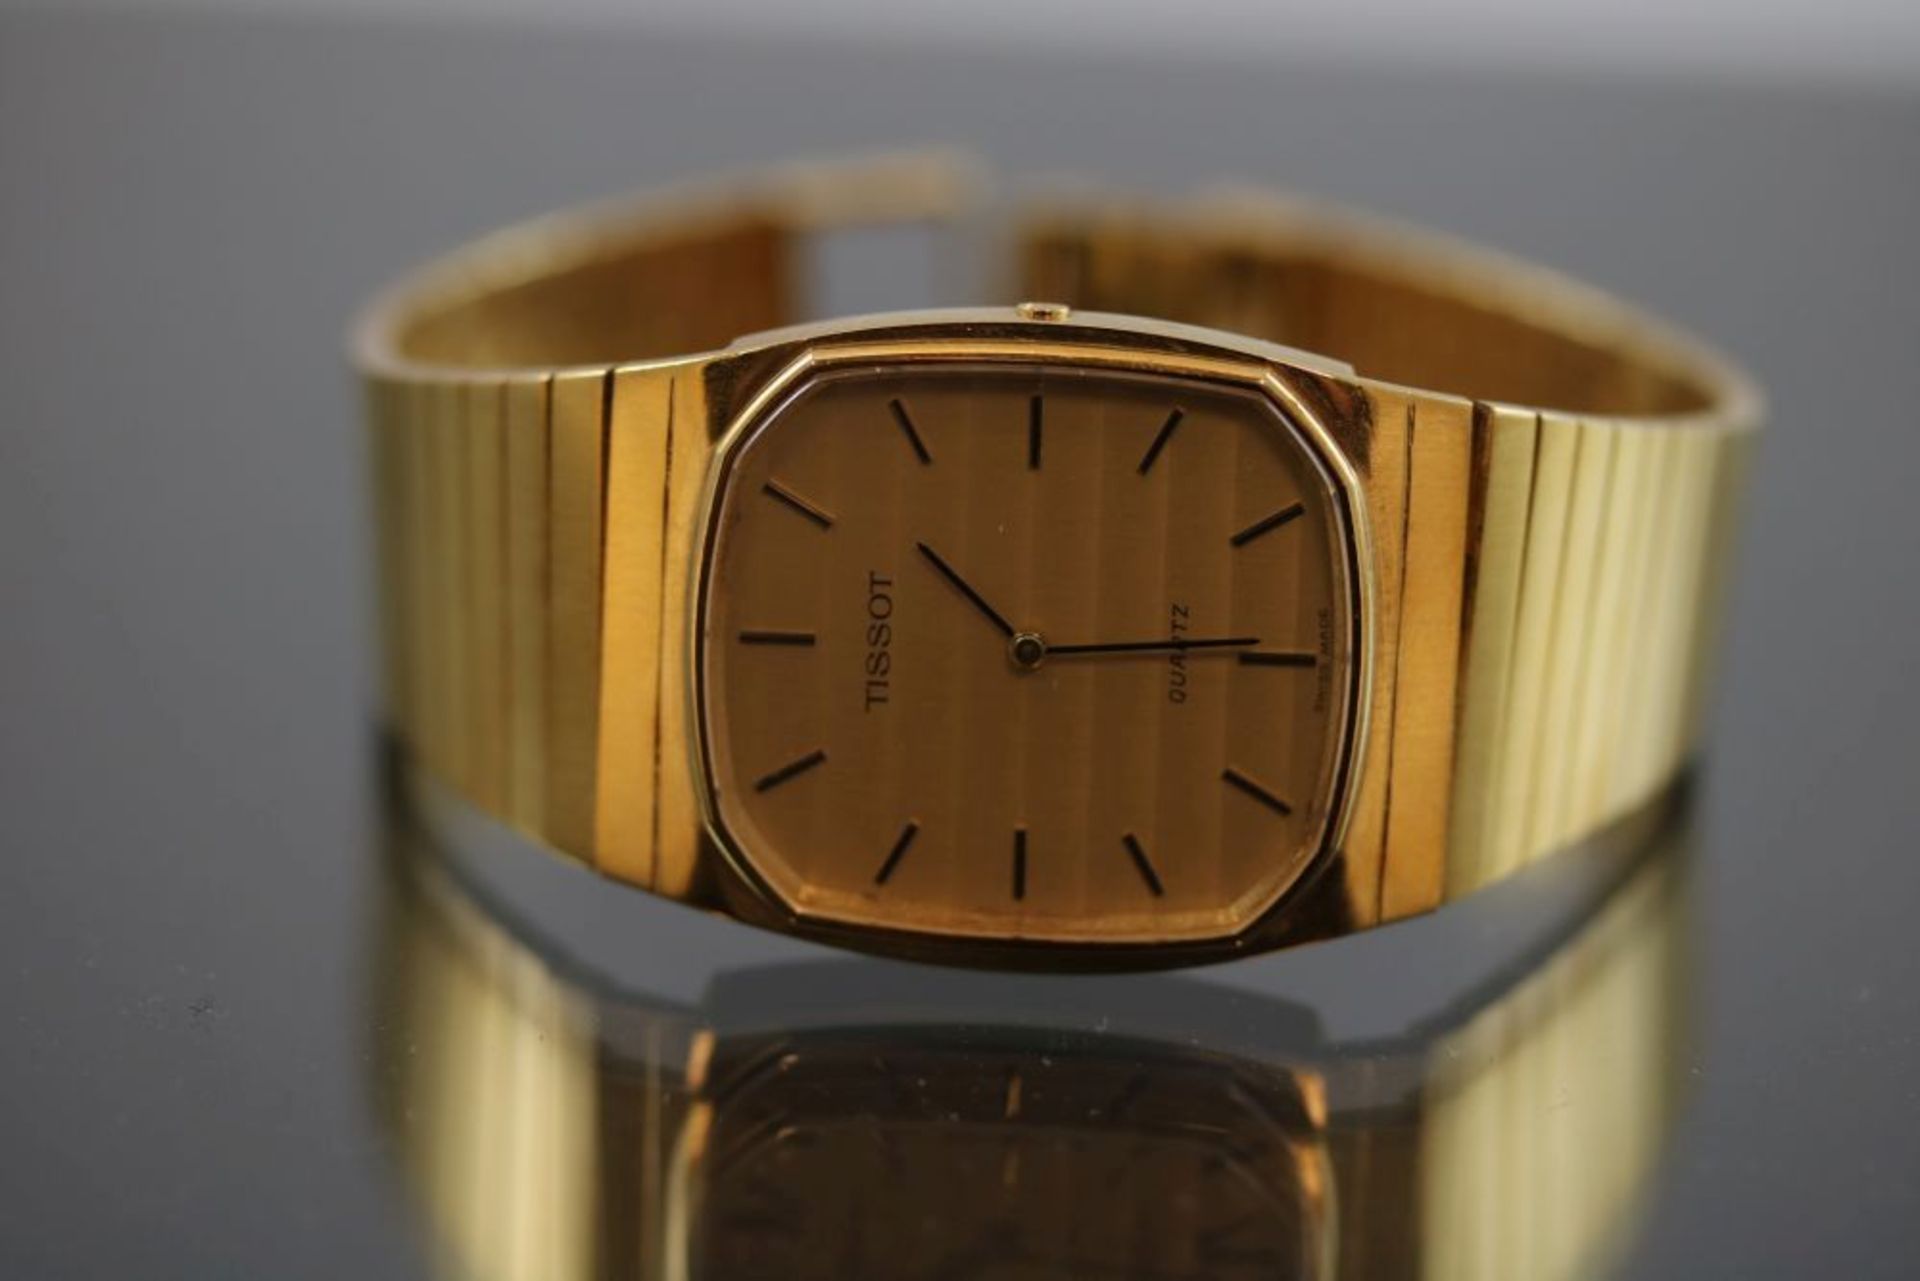 Tissot ArmbanduhrWerk: QuartzBand: 750 GoldGehäuse Ø: 3 x 3,8 cm Gewicht ges.: 91,6 Gramm - - -25.00